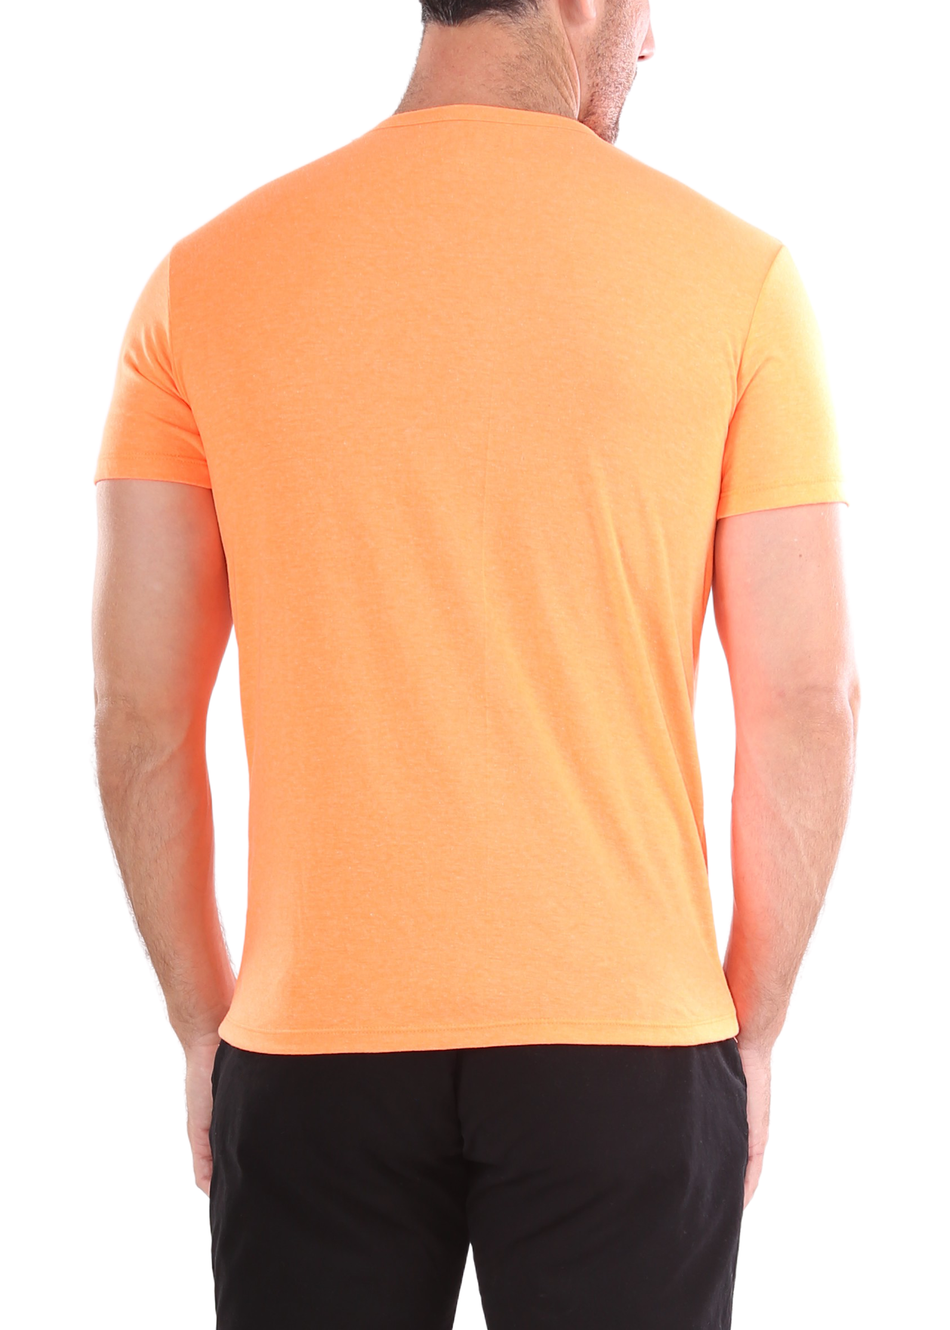 Men's Essentials Cotton Crew Neck Solid Orange